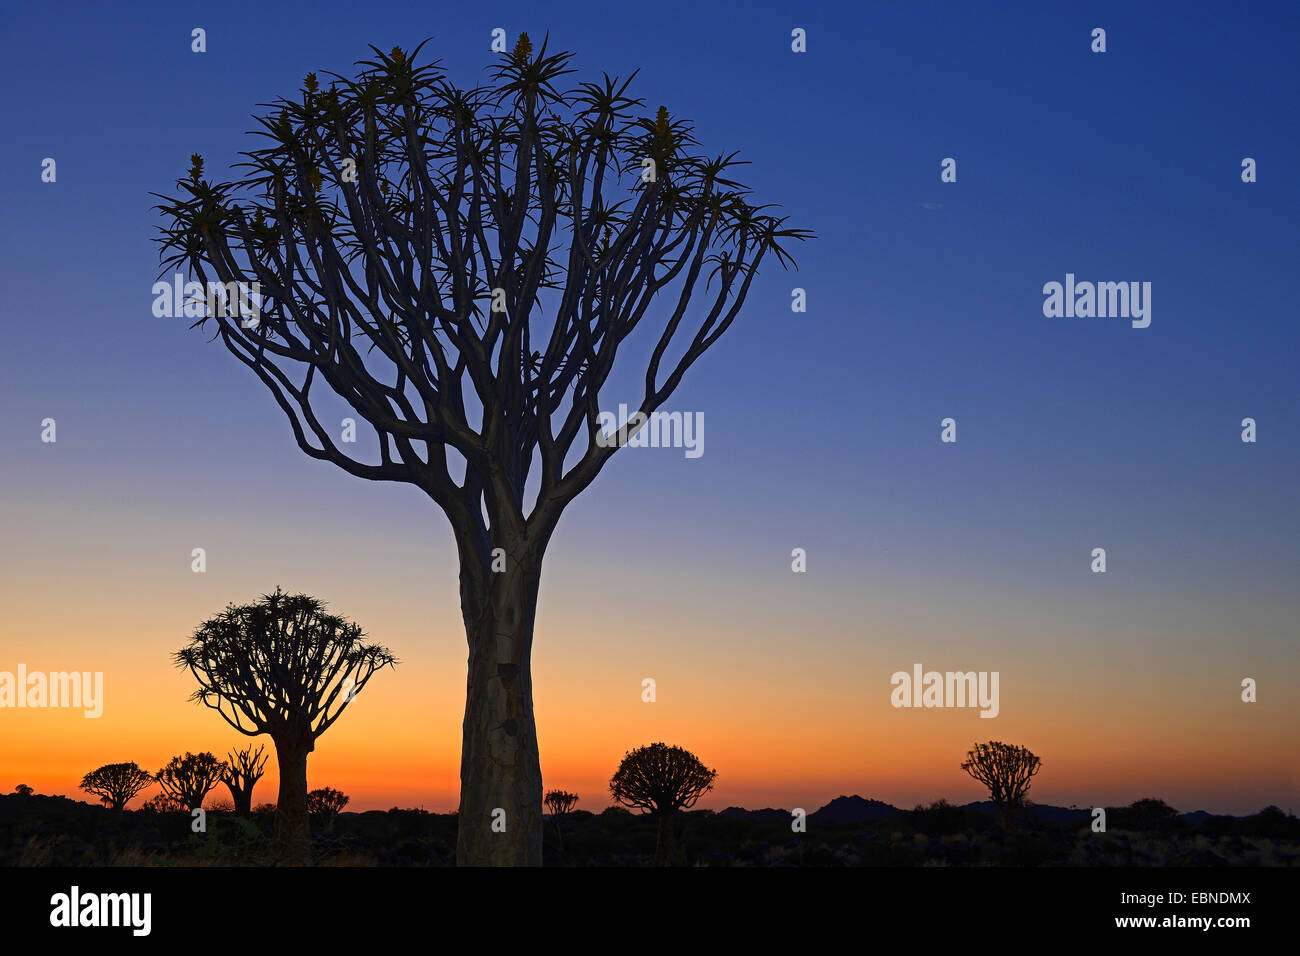 Kokerboom, Quivertree, Quiver Tree (Aloe dichotoma), at sunset, Namibia, Keetmanshoop Stock Photo